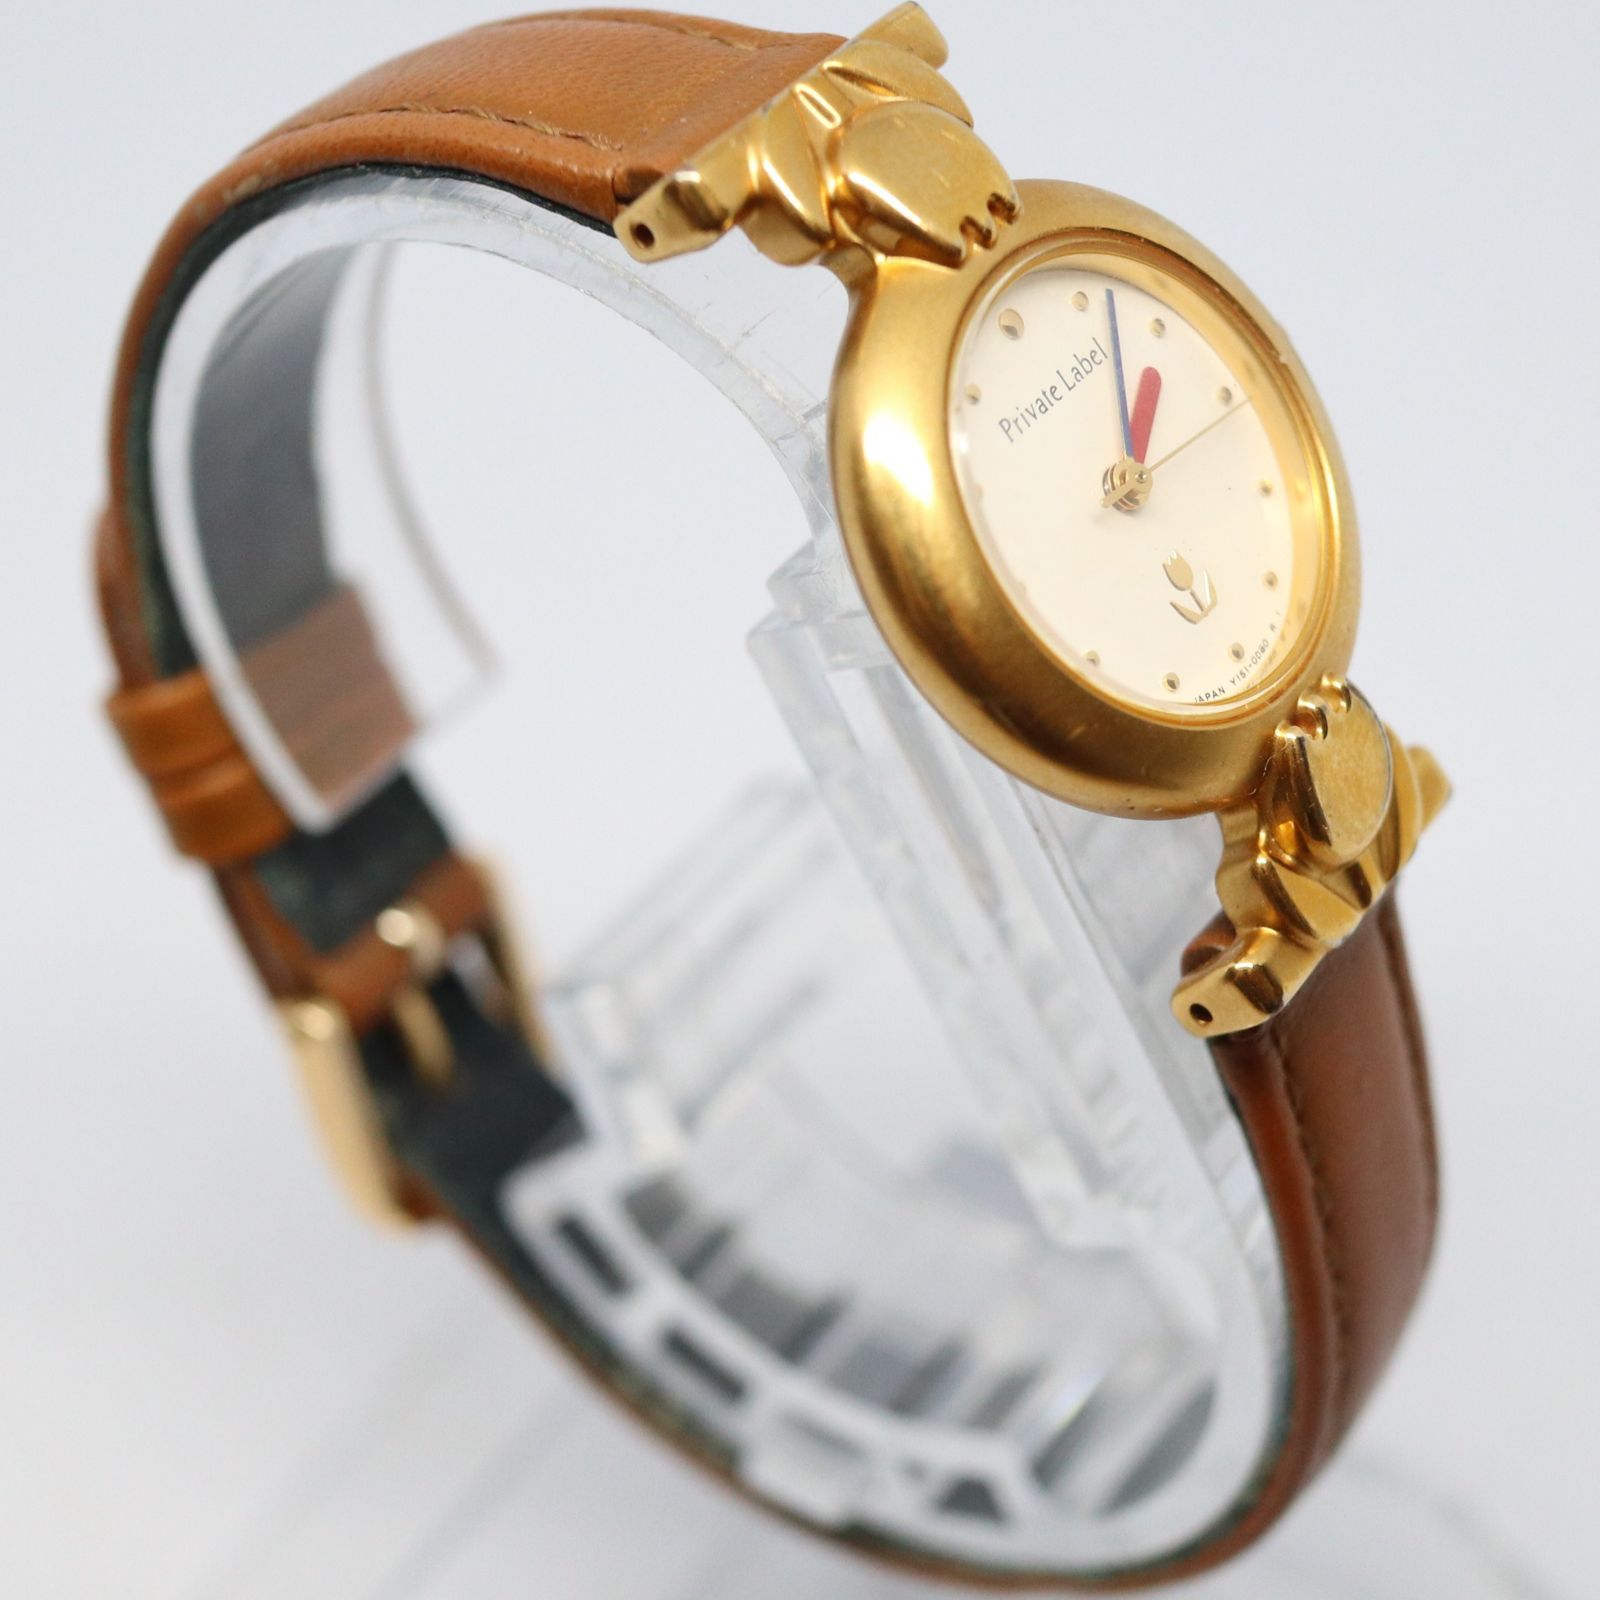 稼働品】PRIVATE LABEL プライベートレーベル 腕時計 レディス ゴールド ホワイト ブラウン クオーツ チューリップ - メルカリ